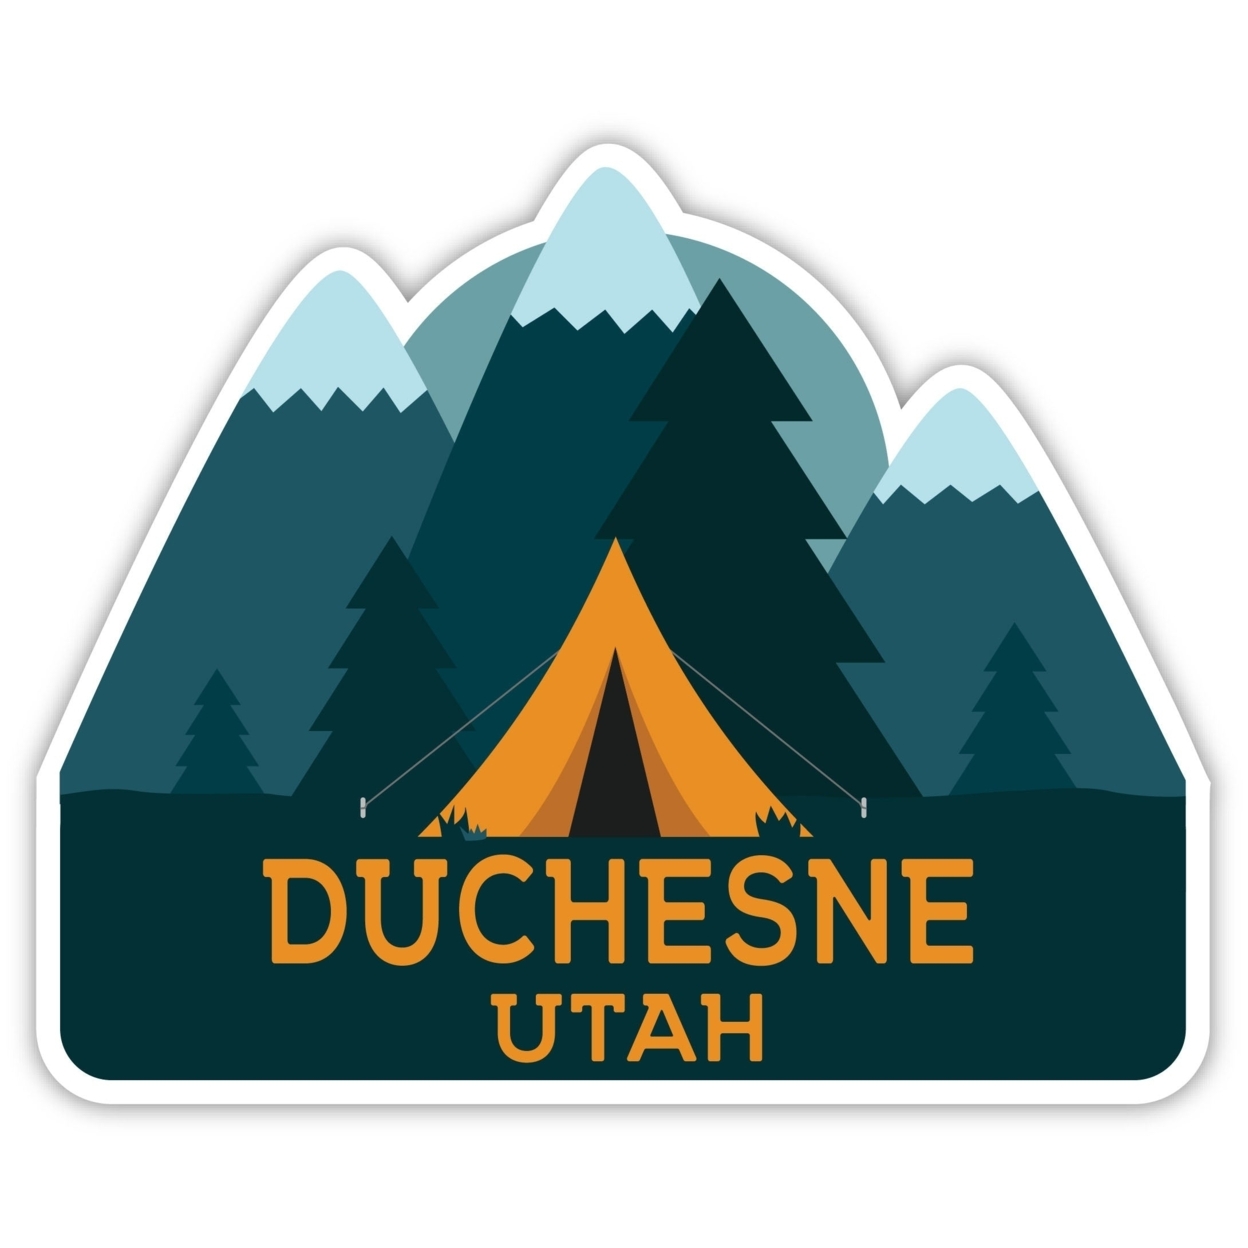 Duchesne Utah Souvenir Decorative Stickers (Choose Theme And Size) - Single Unit, 4-Inch, Tent